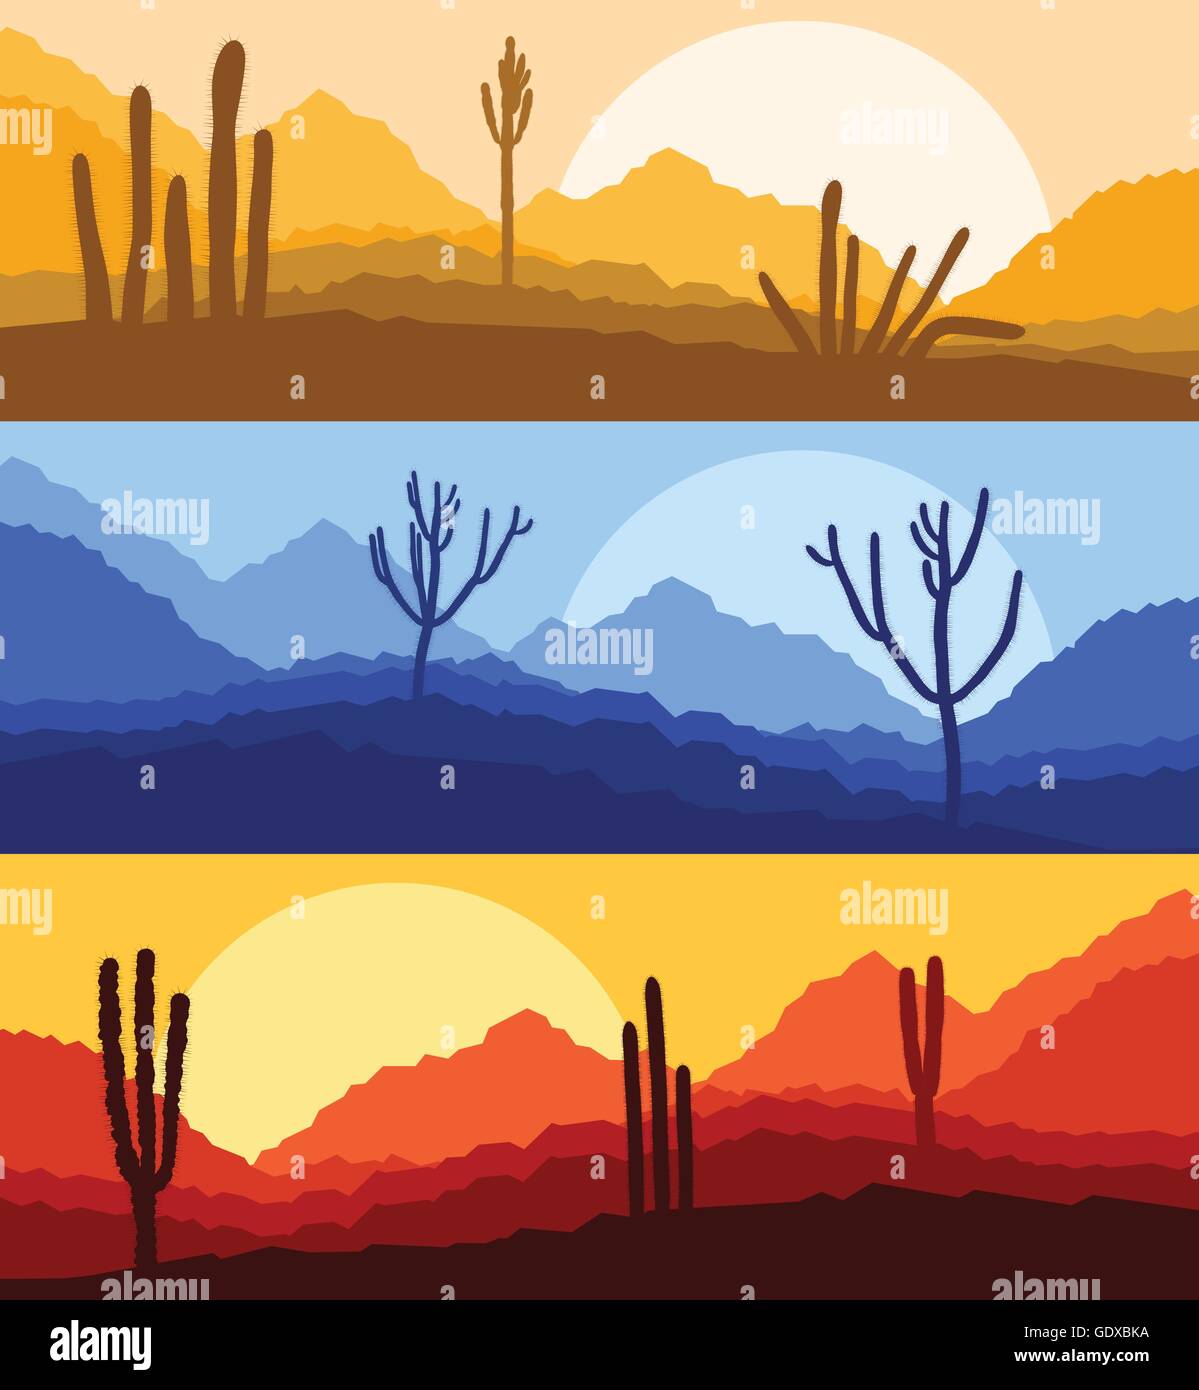 Wüste Kaktus Pflanzen wilder Natur Landschaft Abbildung Hintergrund Vektor Stock Vektor